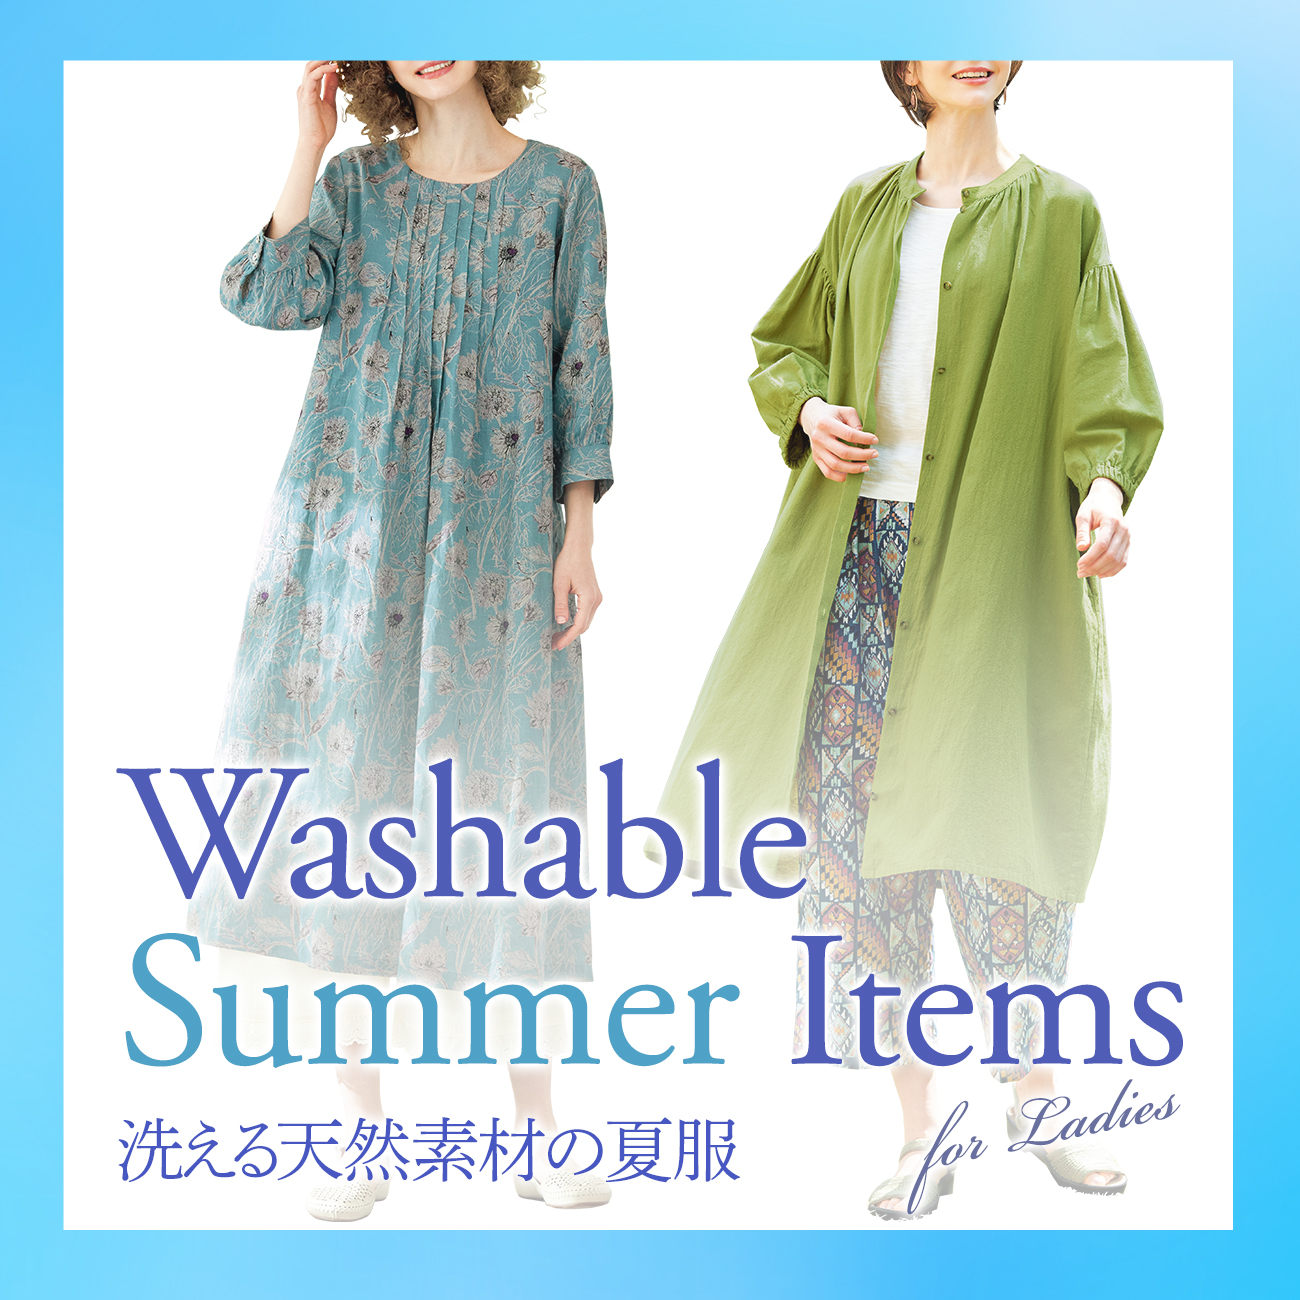 【特集】洗える天然素材の夏服 for Ladiesn